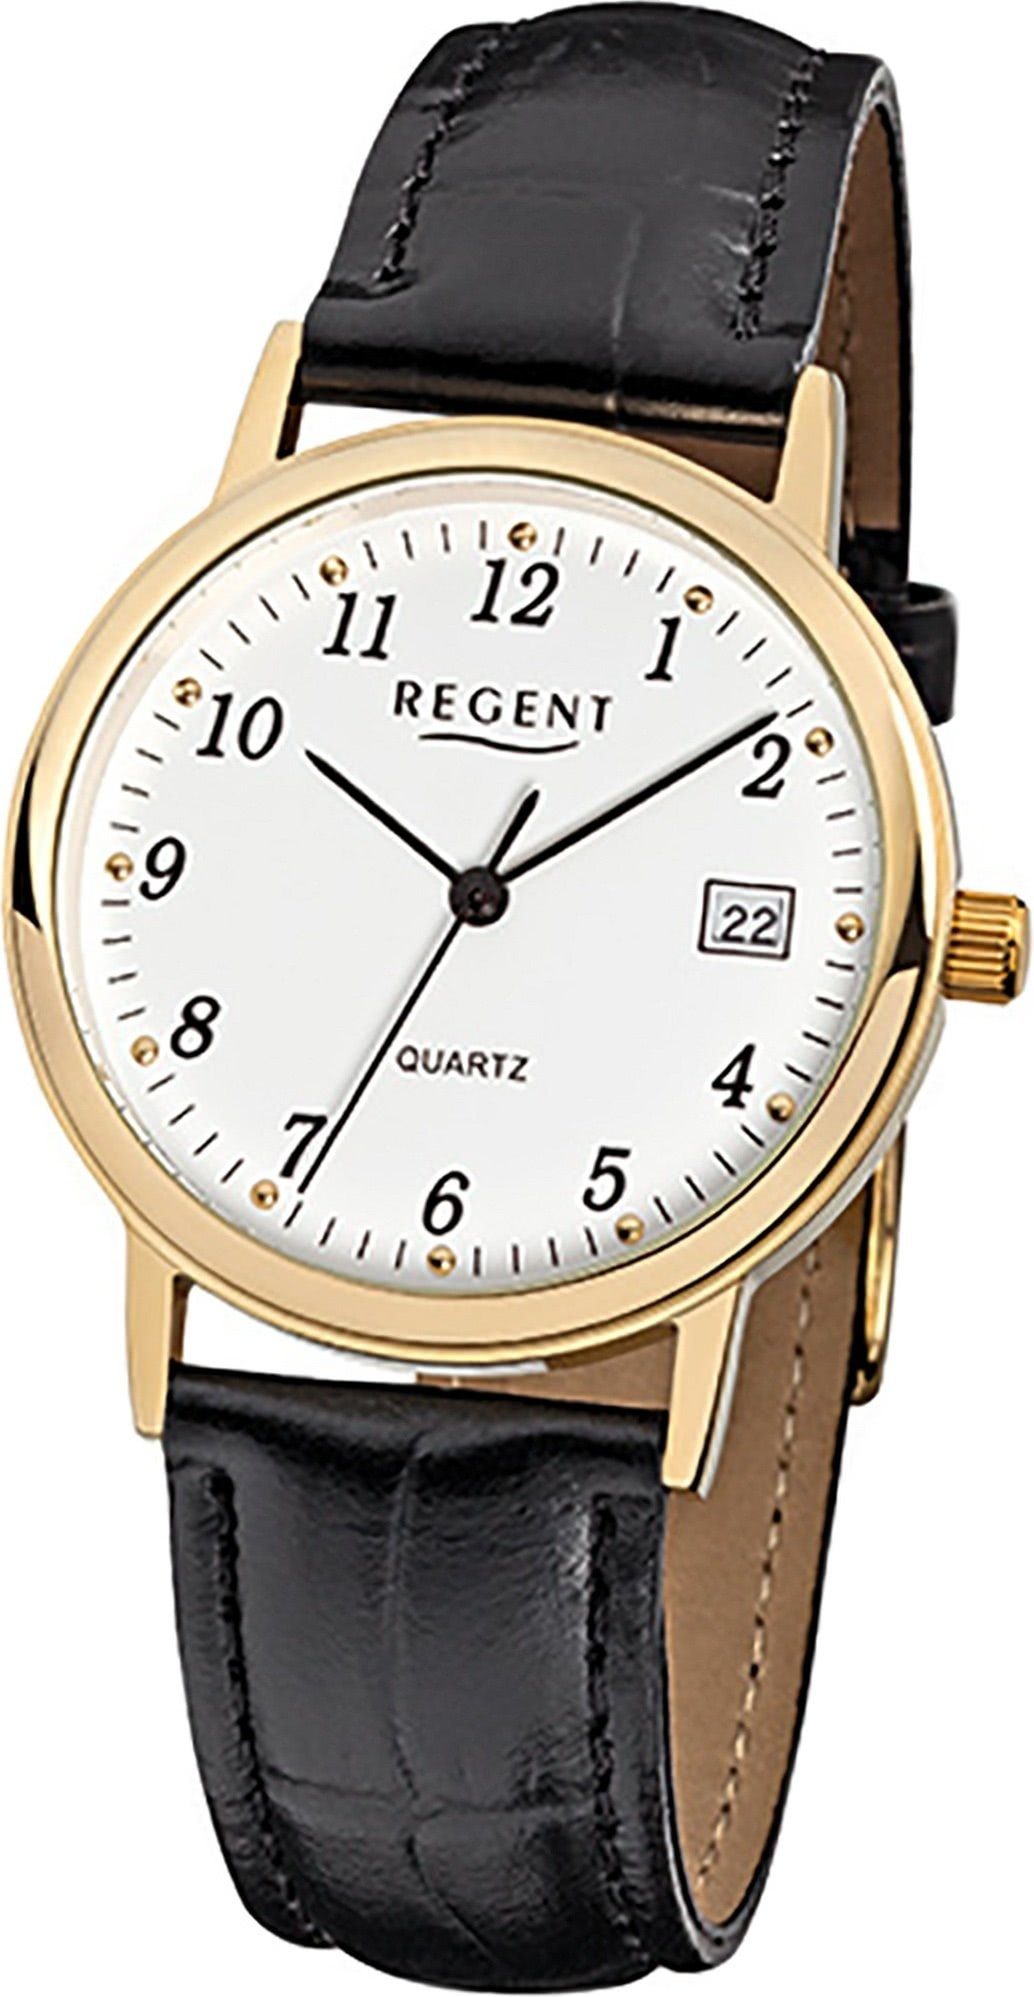 Regent Quarzuhr Regent Leder Gehäuse, F-790 34mm) Lederarmband Herrenuhr Uhr schwarz, mittel Quarzuhr, (ca. Herren rundes